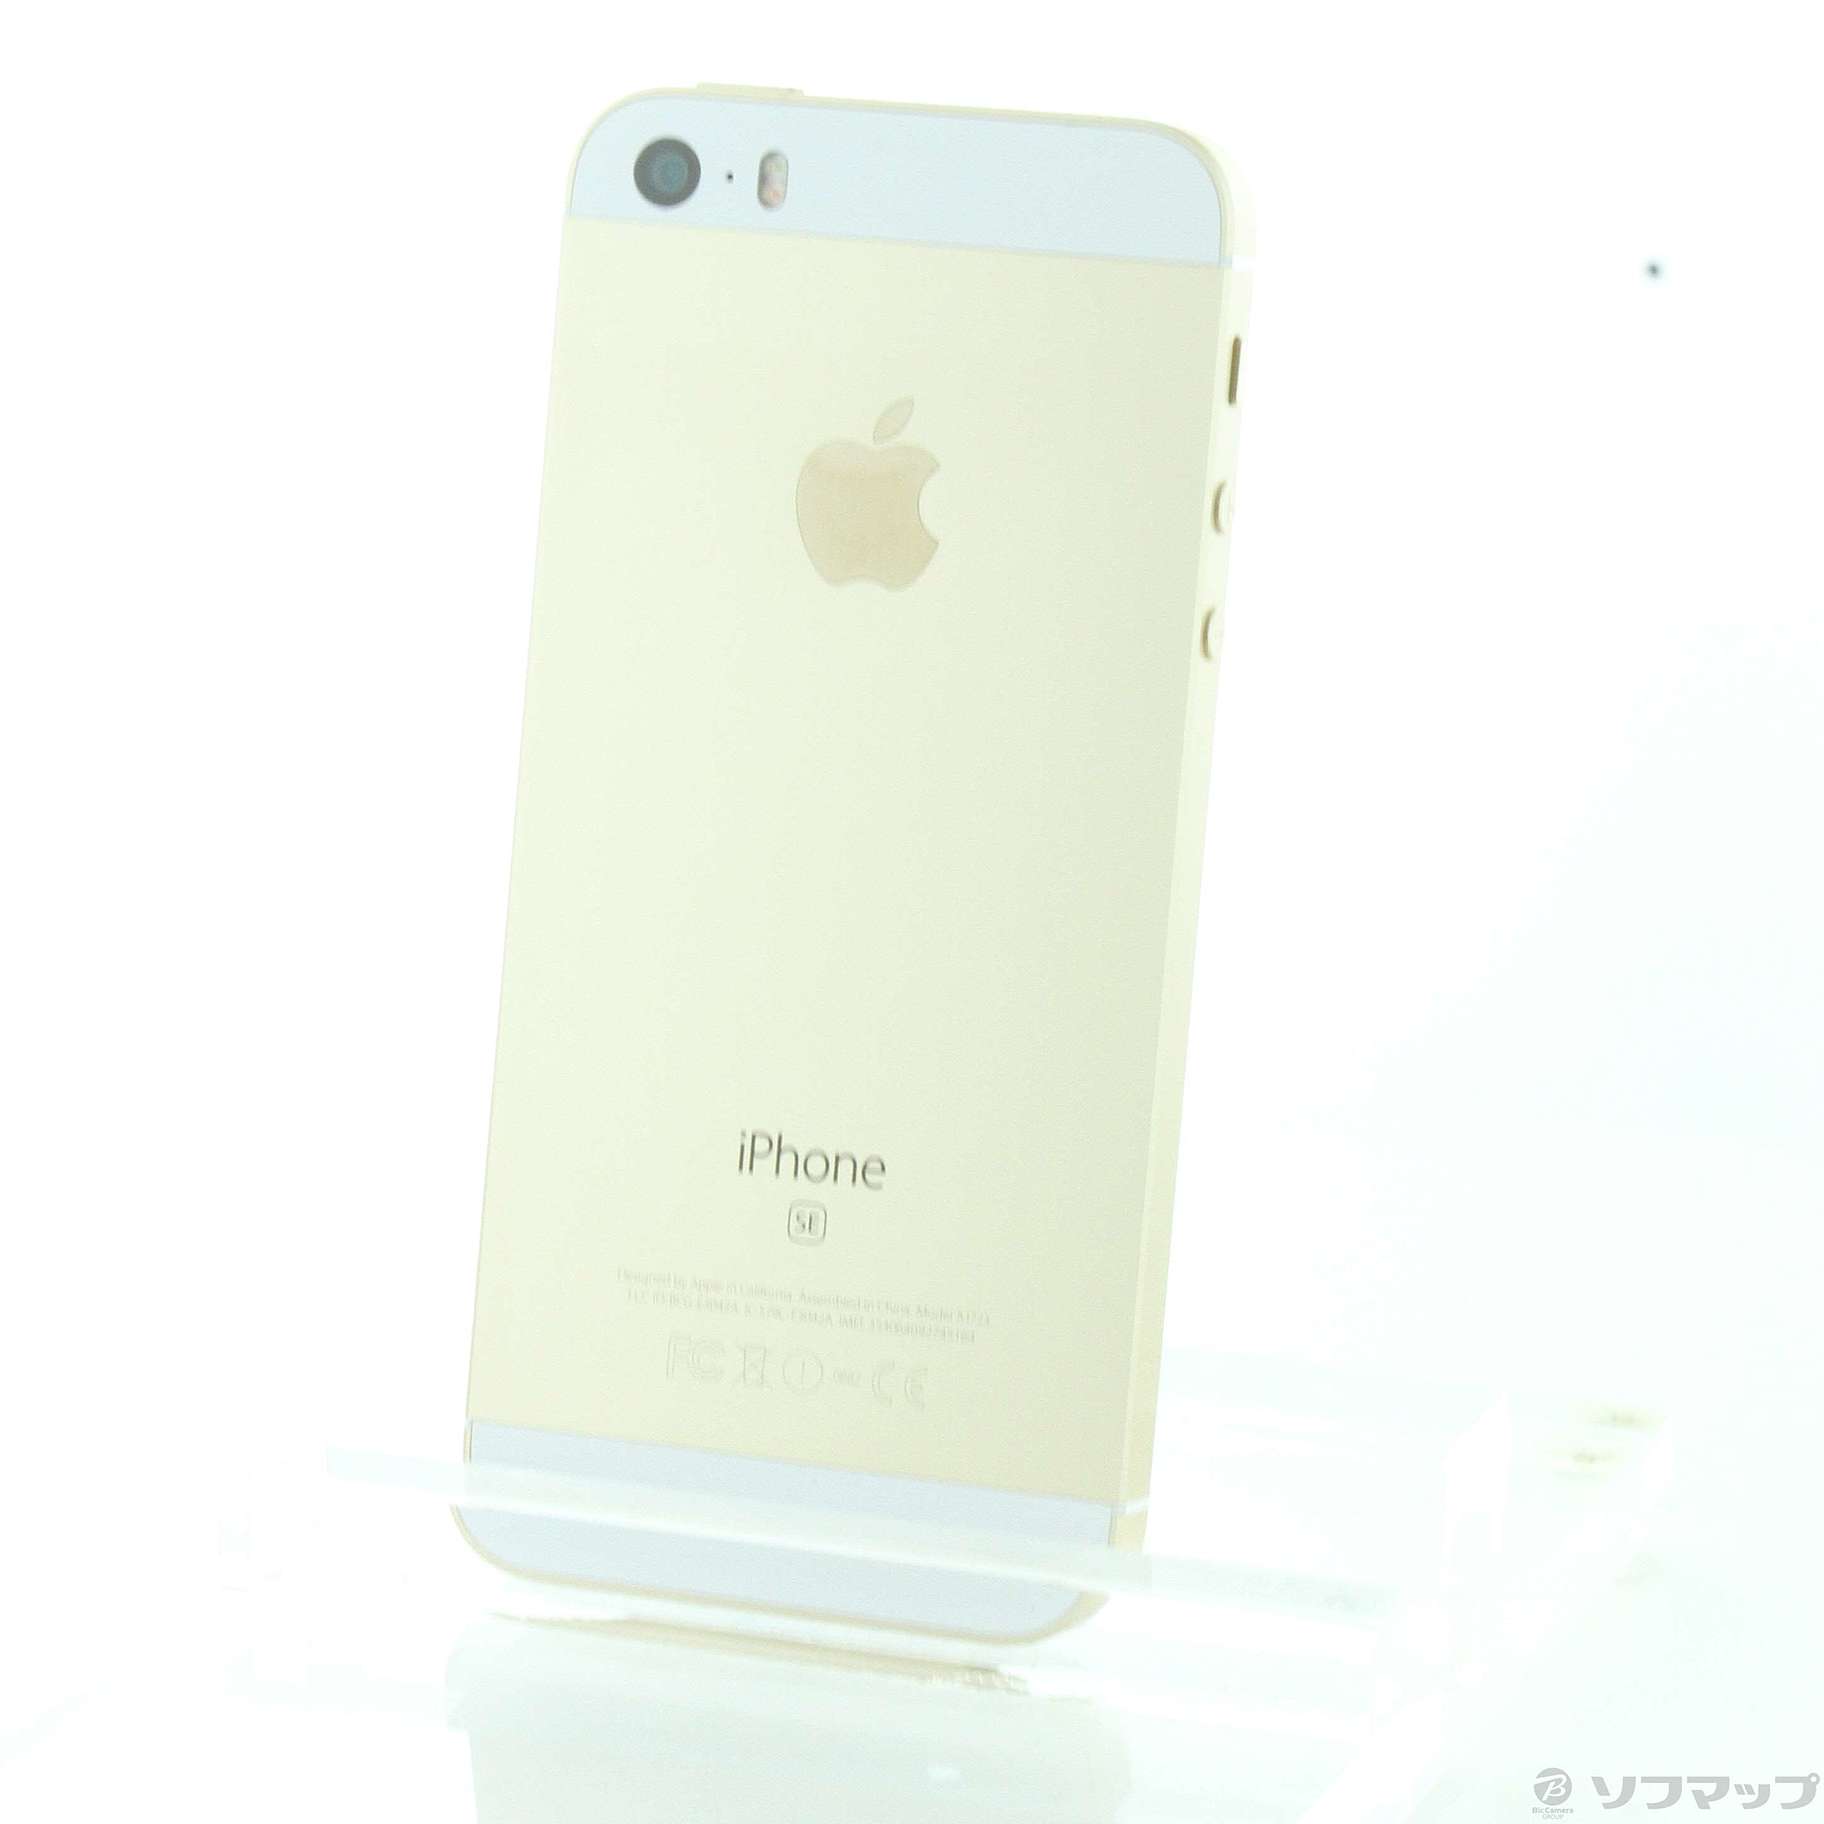 iPhone SE SIMフリー 32GB Gold ゴールド-